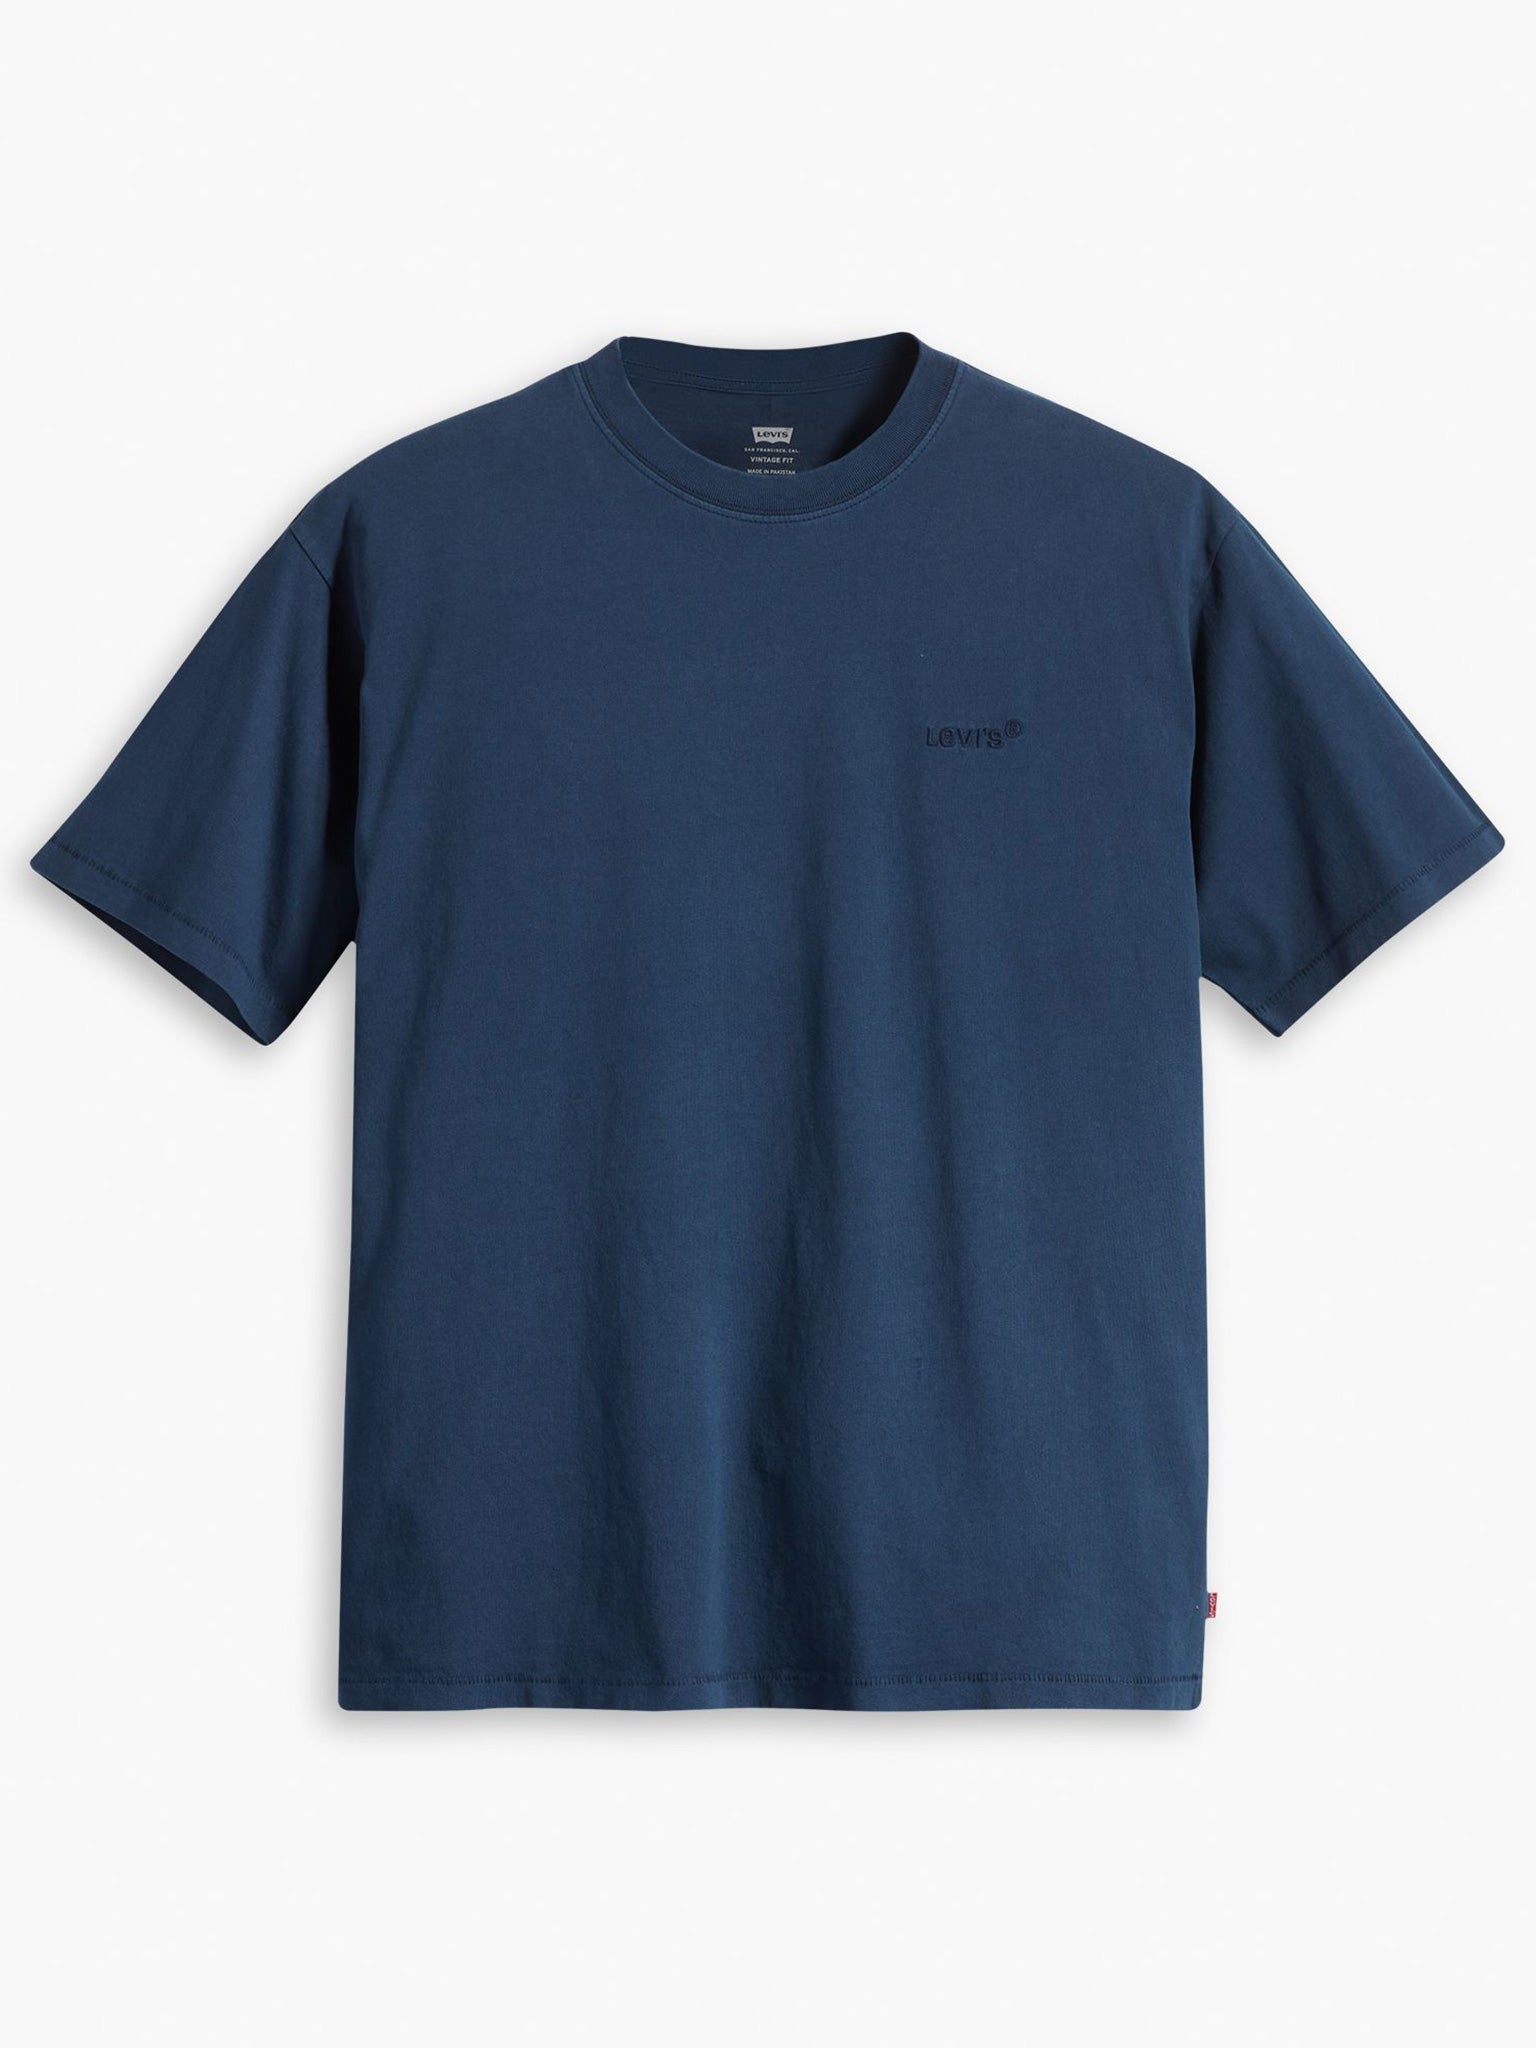 Ανδρικό t-shirt vintage tee blues A06370058 | A06370058